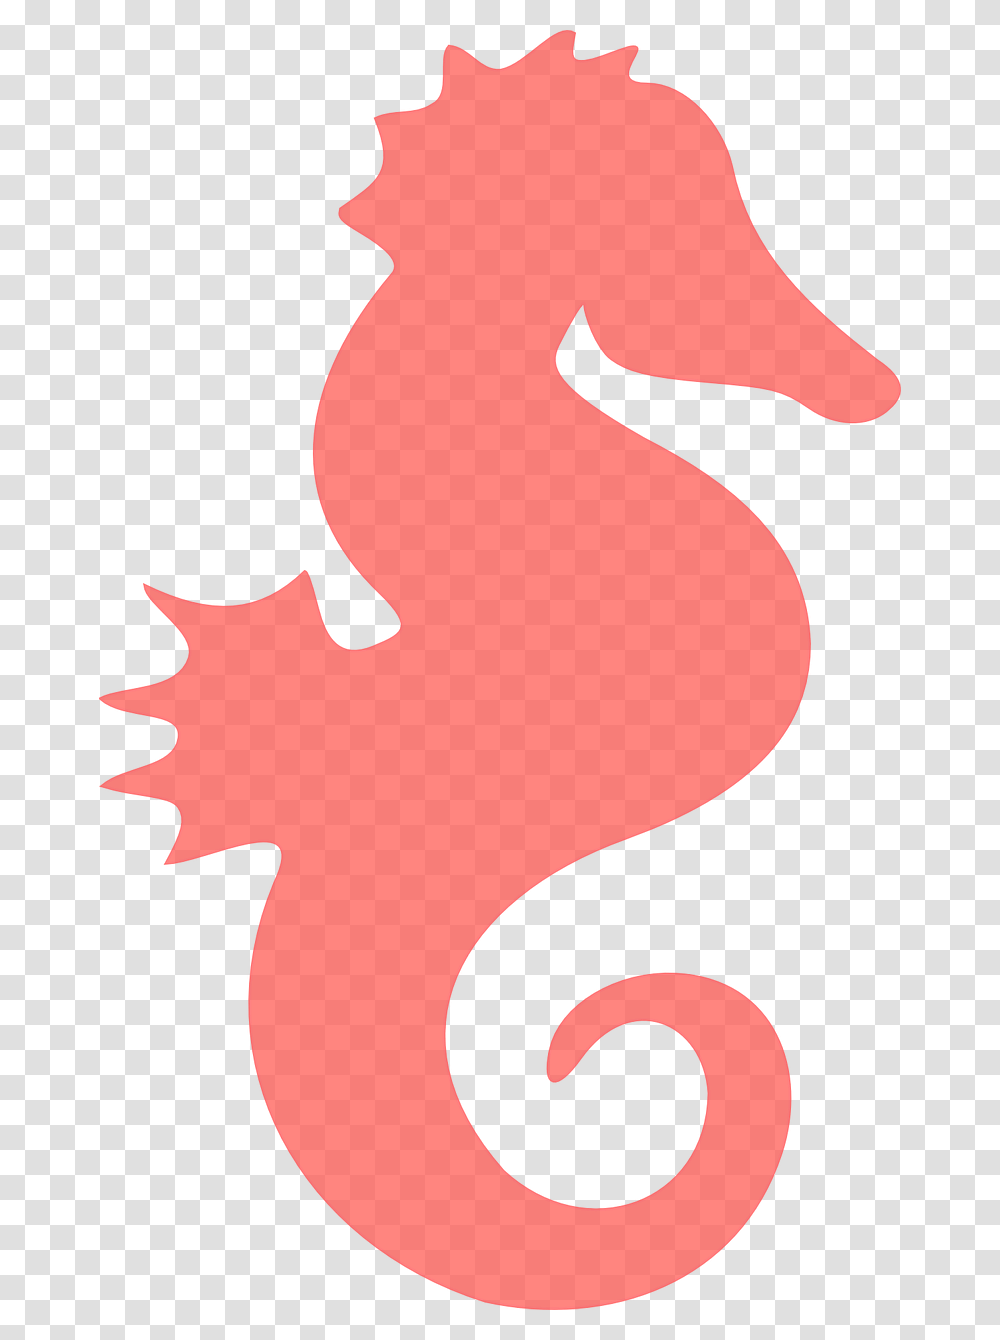 Clip Art Imagem Gratis No Pixabay Coral Seahorse Clipart, Leaf, Plant, Person Transparent Png